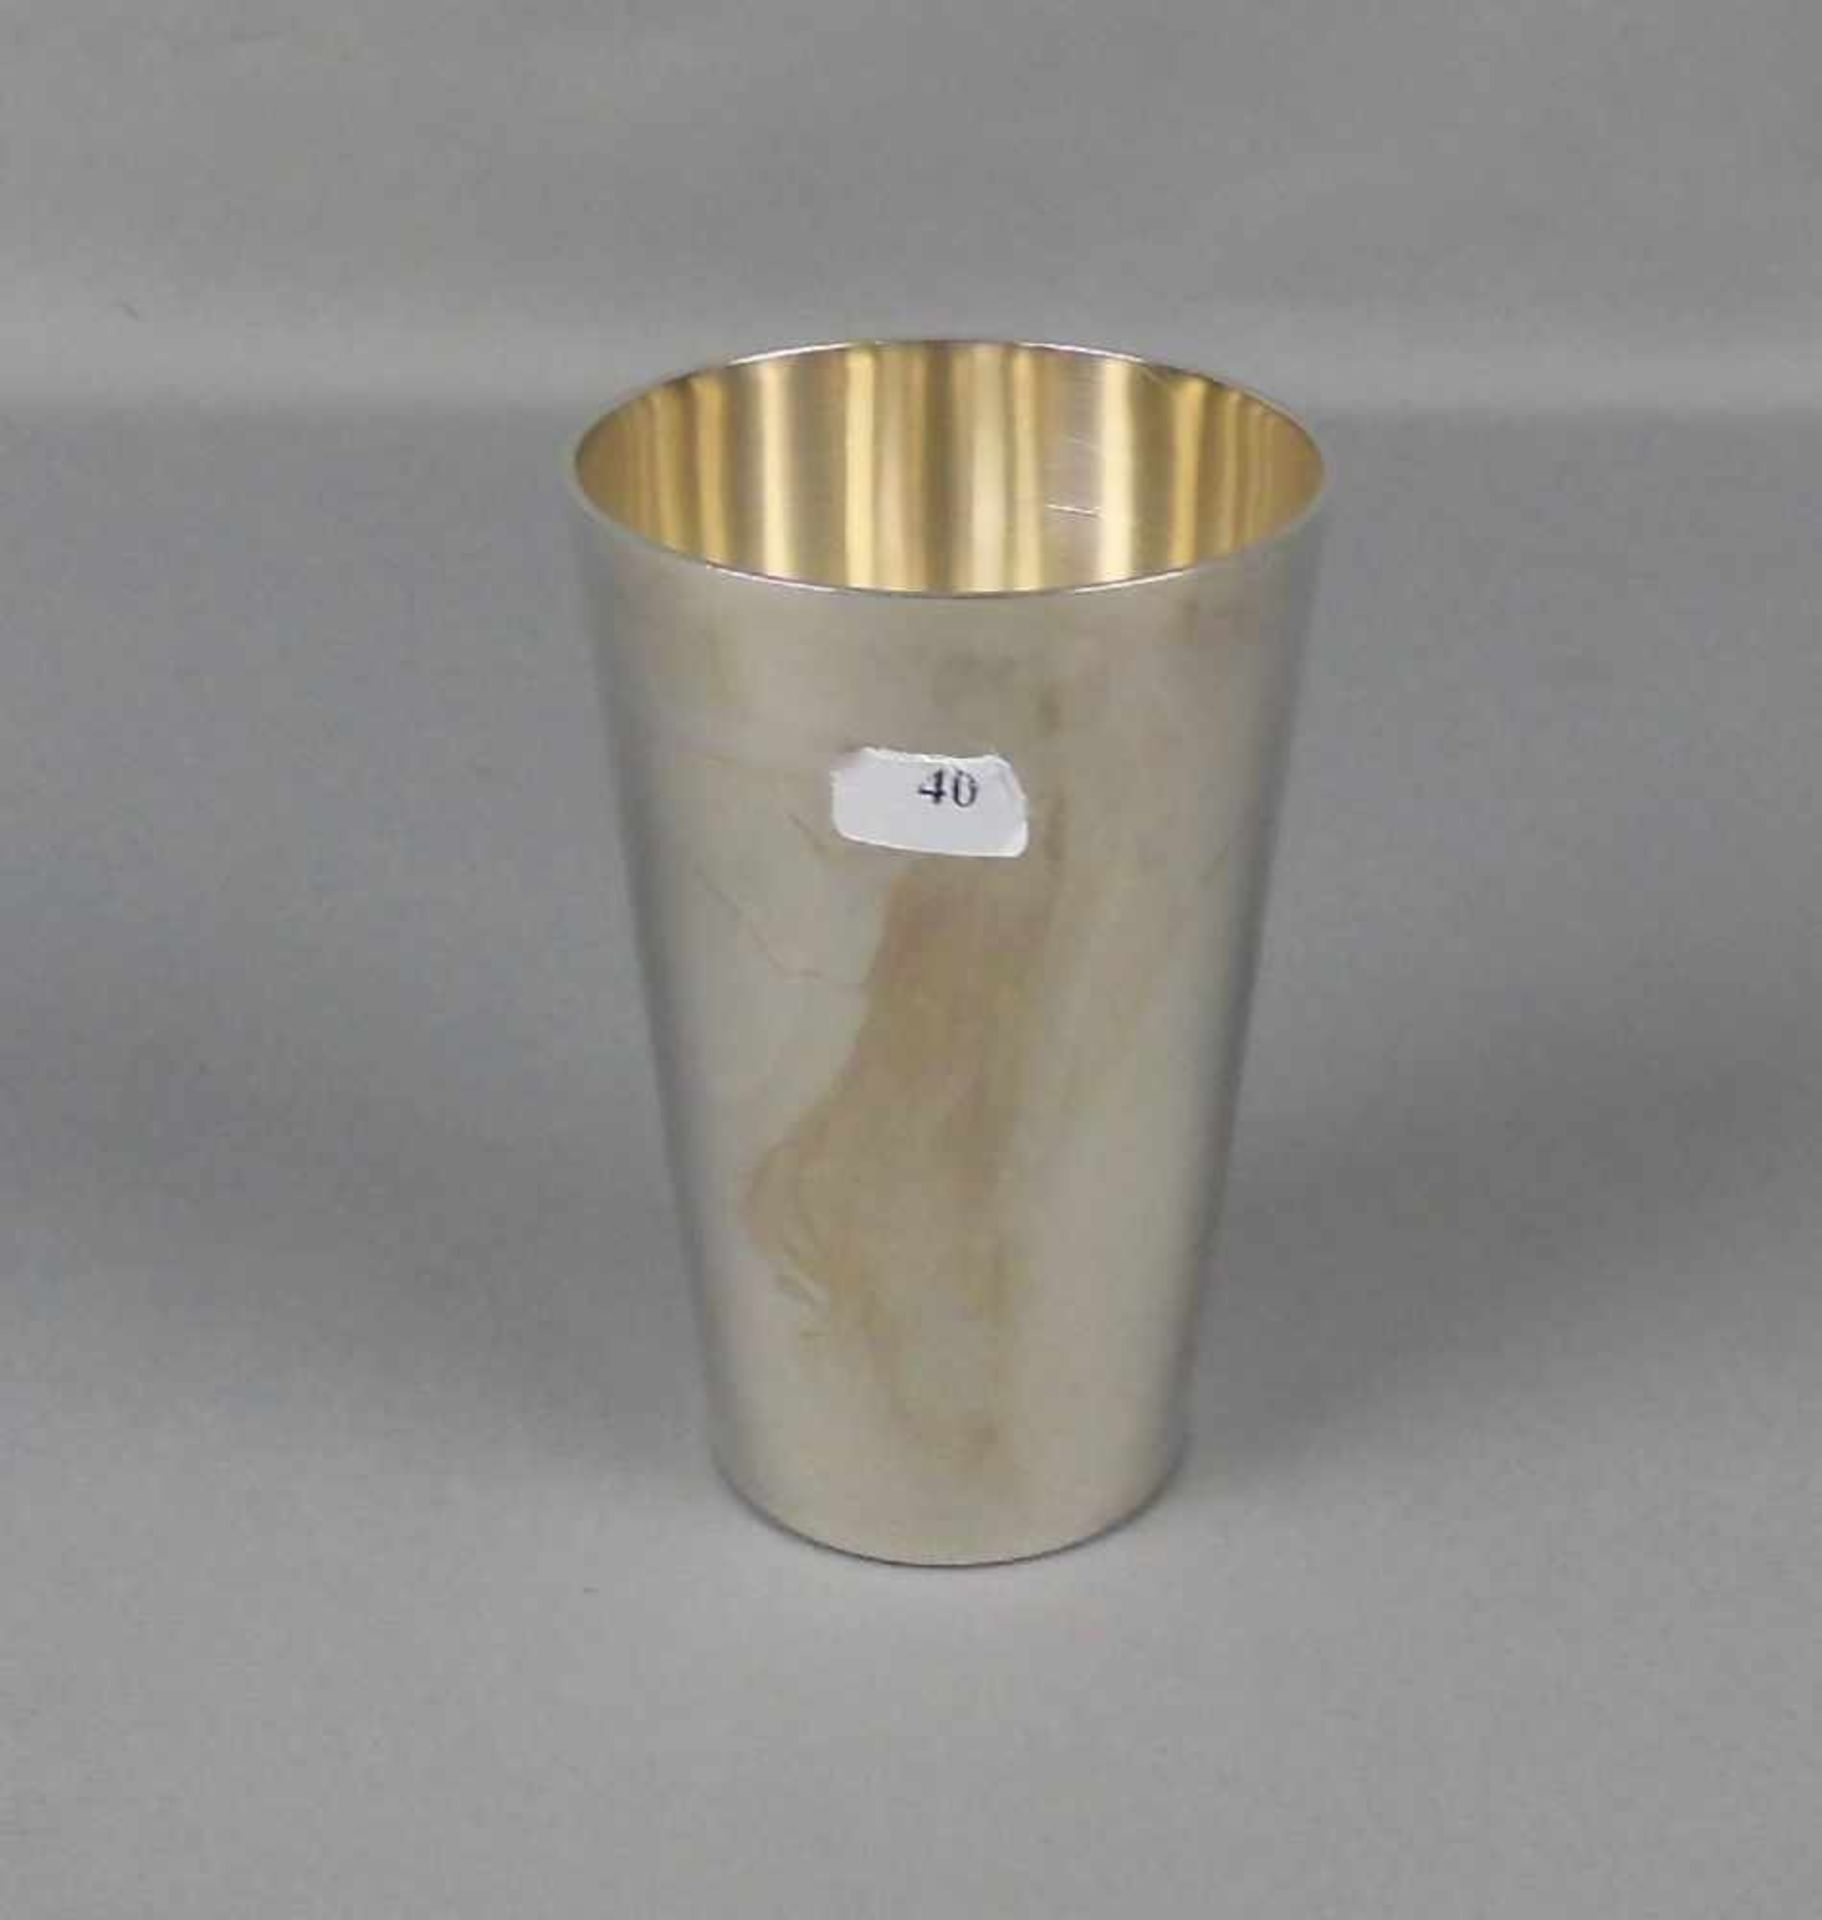 BECHER / silver cup, Sterlingsilber (149 g), deutsch, gepunzt mit Halbmond, Krone, Feingehaltsangabe